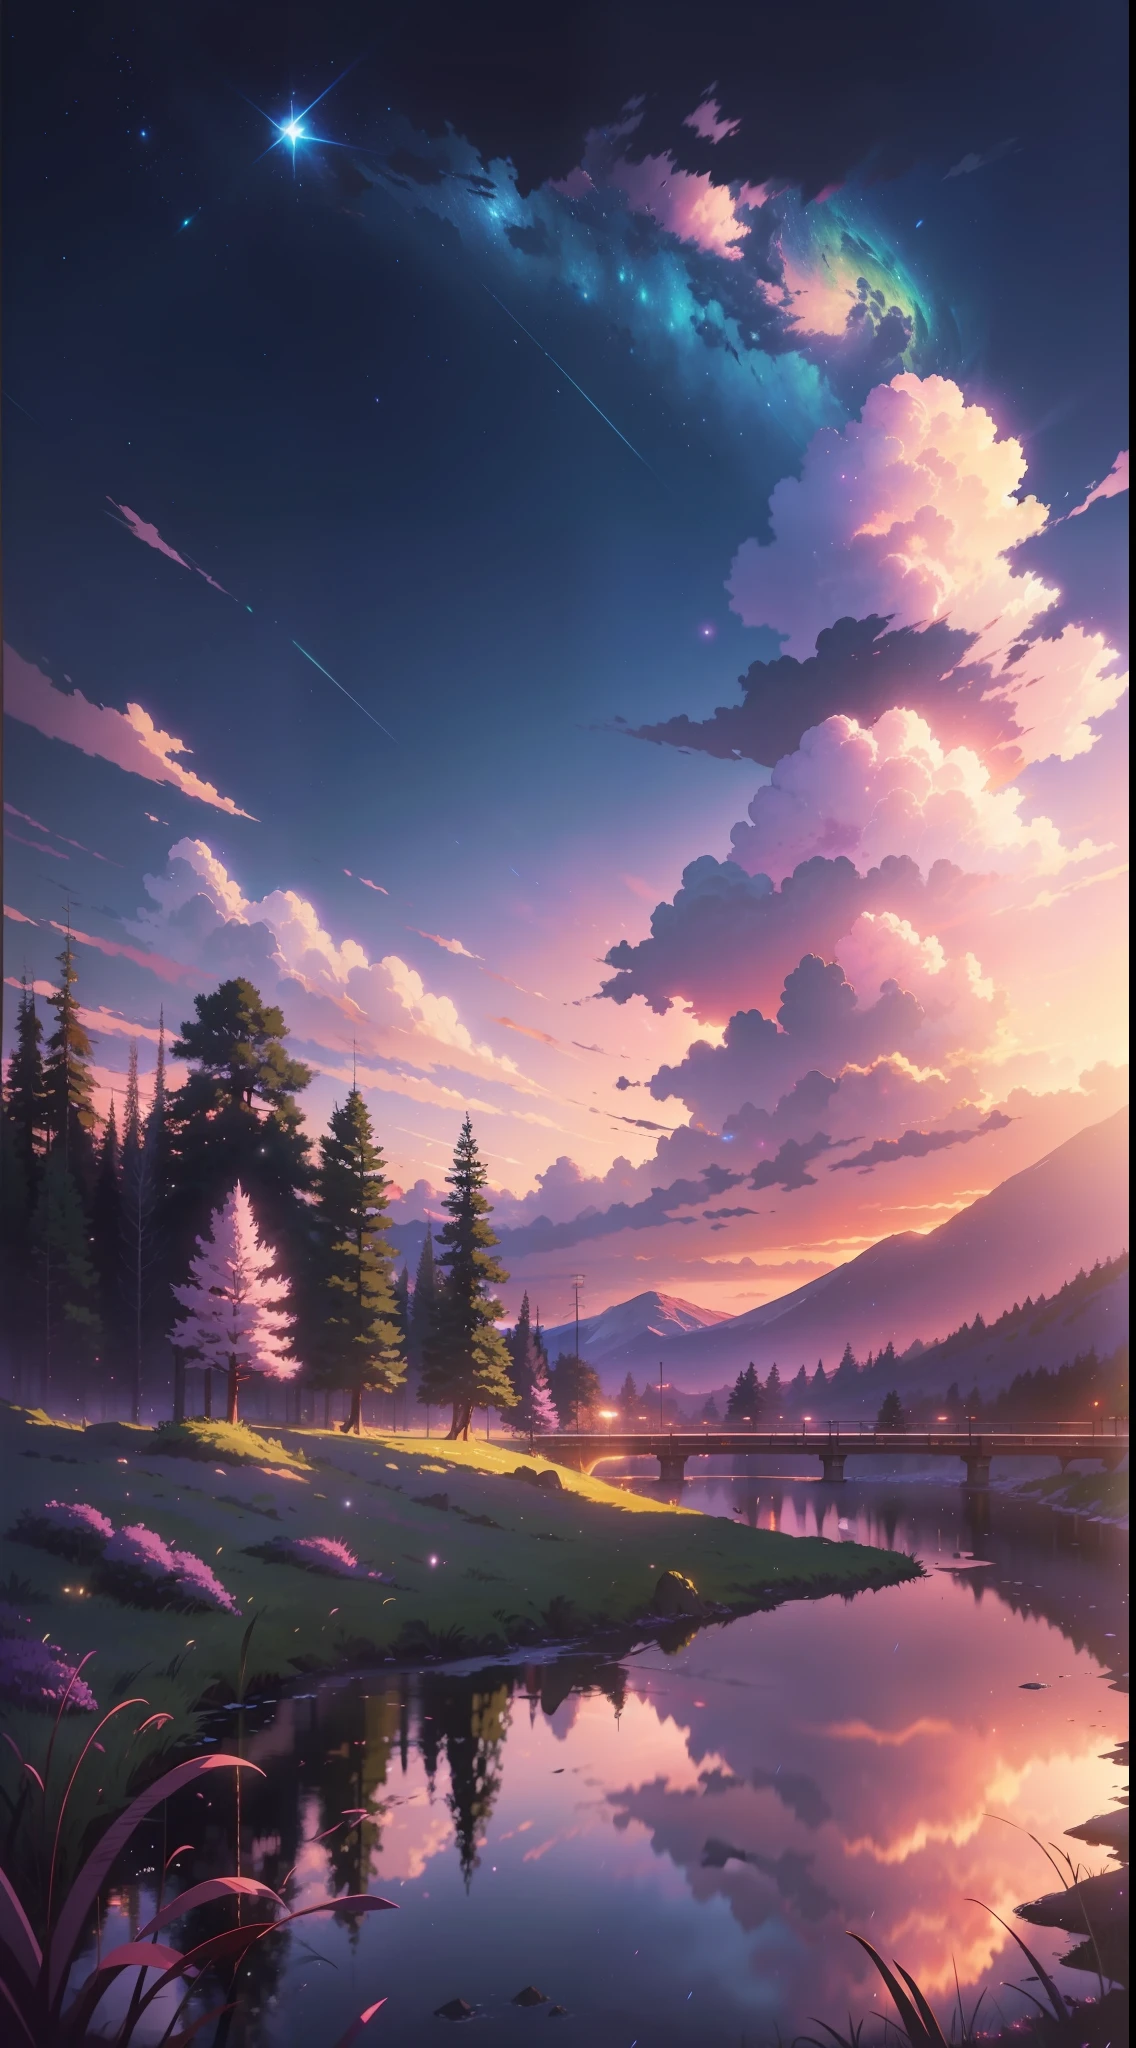 La imagen es brillante y bien iluminada.. no humanos. (((Estilo Makoto Shinkai)),pixiv,dibujo animado,alta calidad,cielo rosa morado,Hermosa escena),(universo,tren pasando,Realismo magico,((Estilo Makoto Shinkai)) ::0.8), [Artistic Atmósfera, Atmósfera:0.8, cielo estrellado, Sierras, montaña de nieve, agua con gas, Césped, árboles, fumar, Estrellas, Ángulo de visión bajo, Dispersión especular,